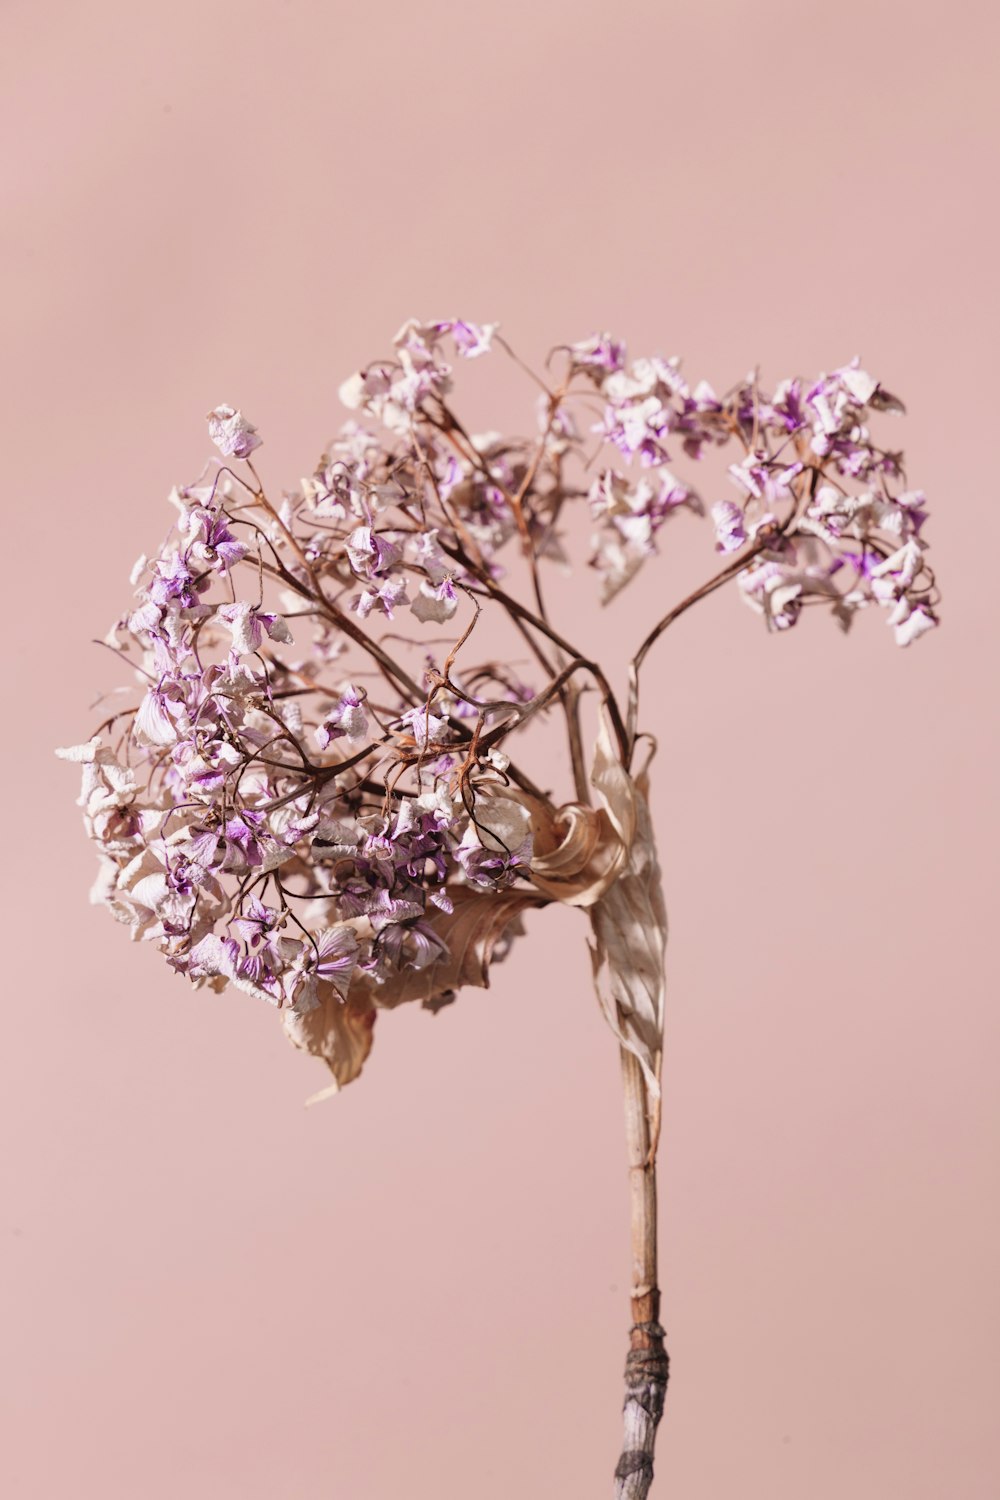 foto a fuoco superficiale di fiori bianchi e viola